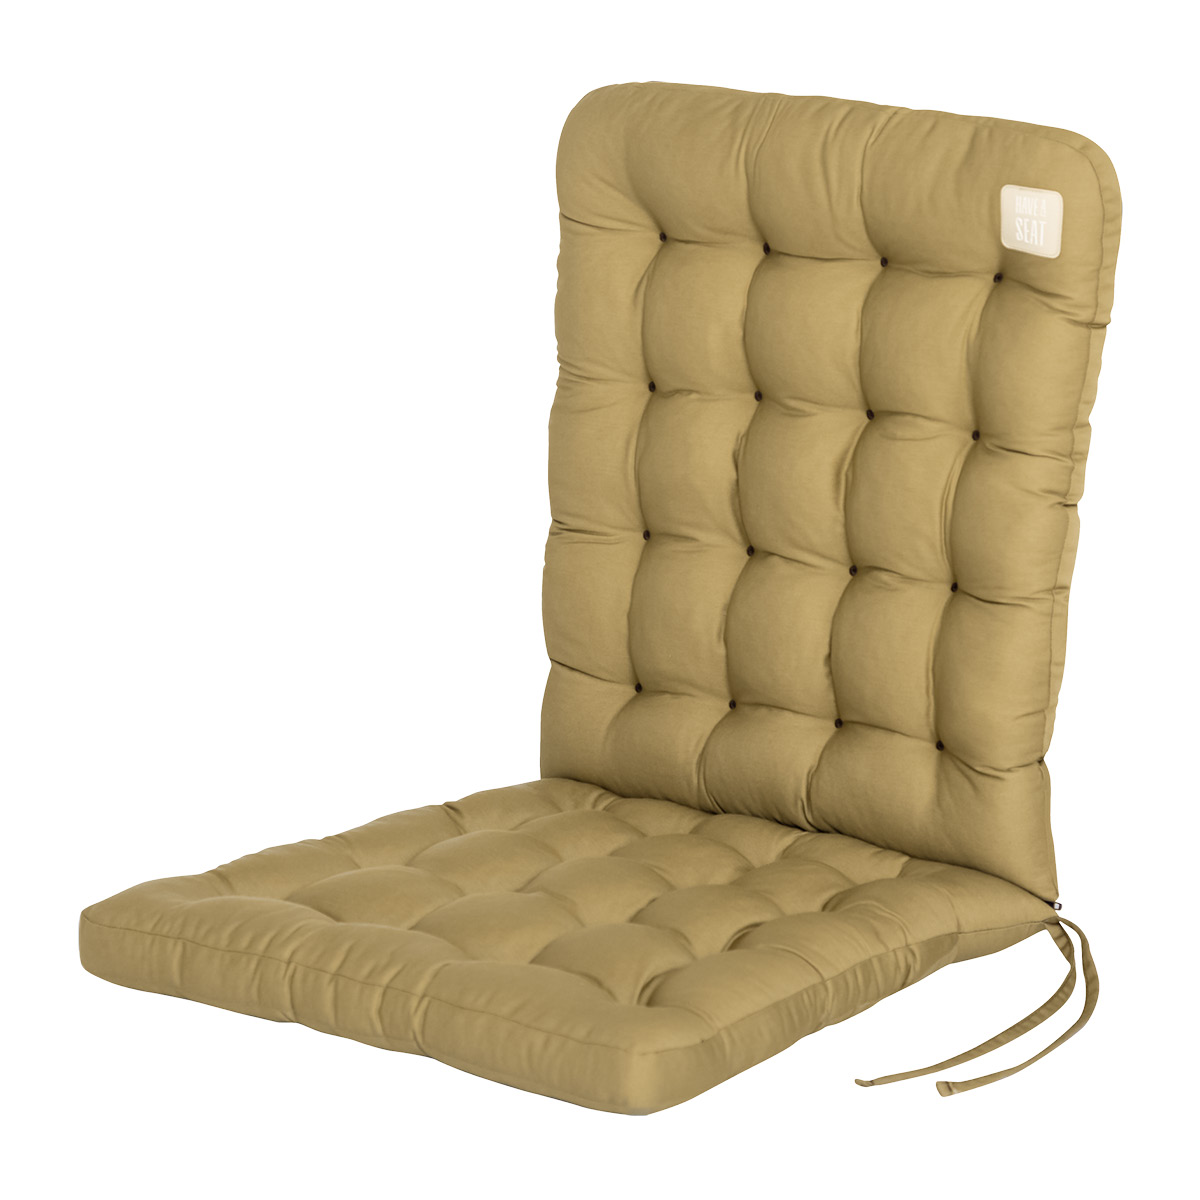 Stuhlauflage beige für Niedriglehner | 6 cm dicke Polsterung, wetterfest | mit Bändern zur Befestigung an Gartenstuhl | HAVE A SEAT Living 